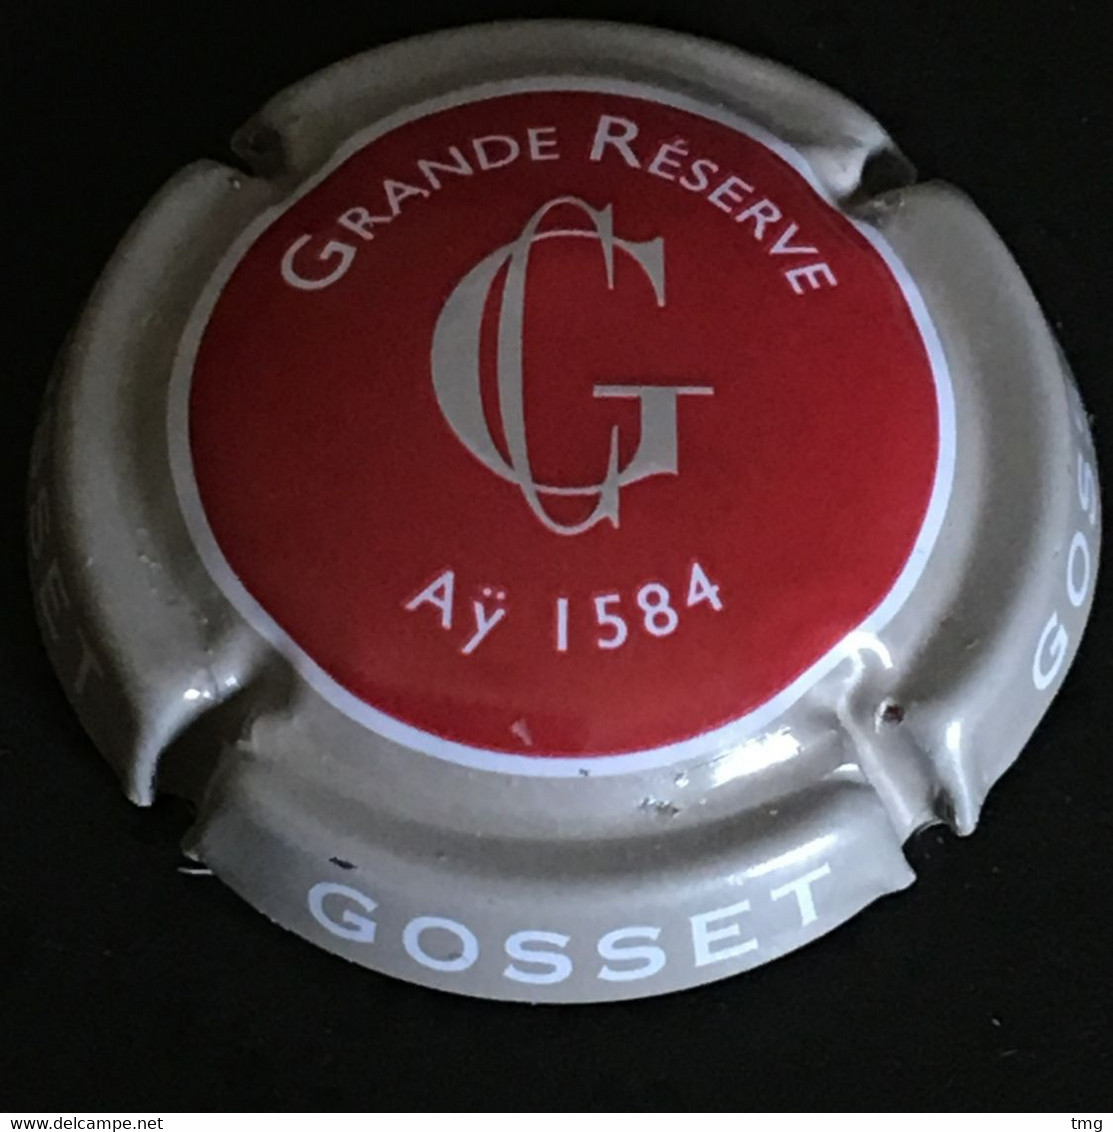 208 - 49a - Gosset, Grande Réserve, Rouge Et Blanc, Contour Grège, Aÿ 1854 (côte 2 Euros) Capsule De Champagne - Gosset